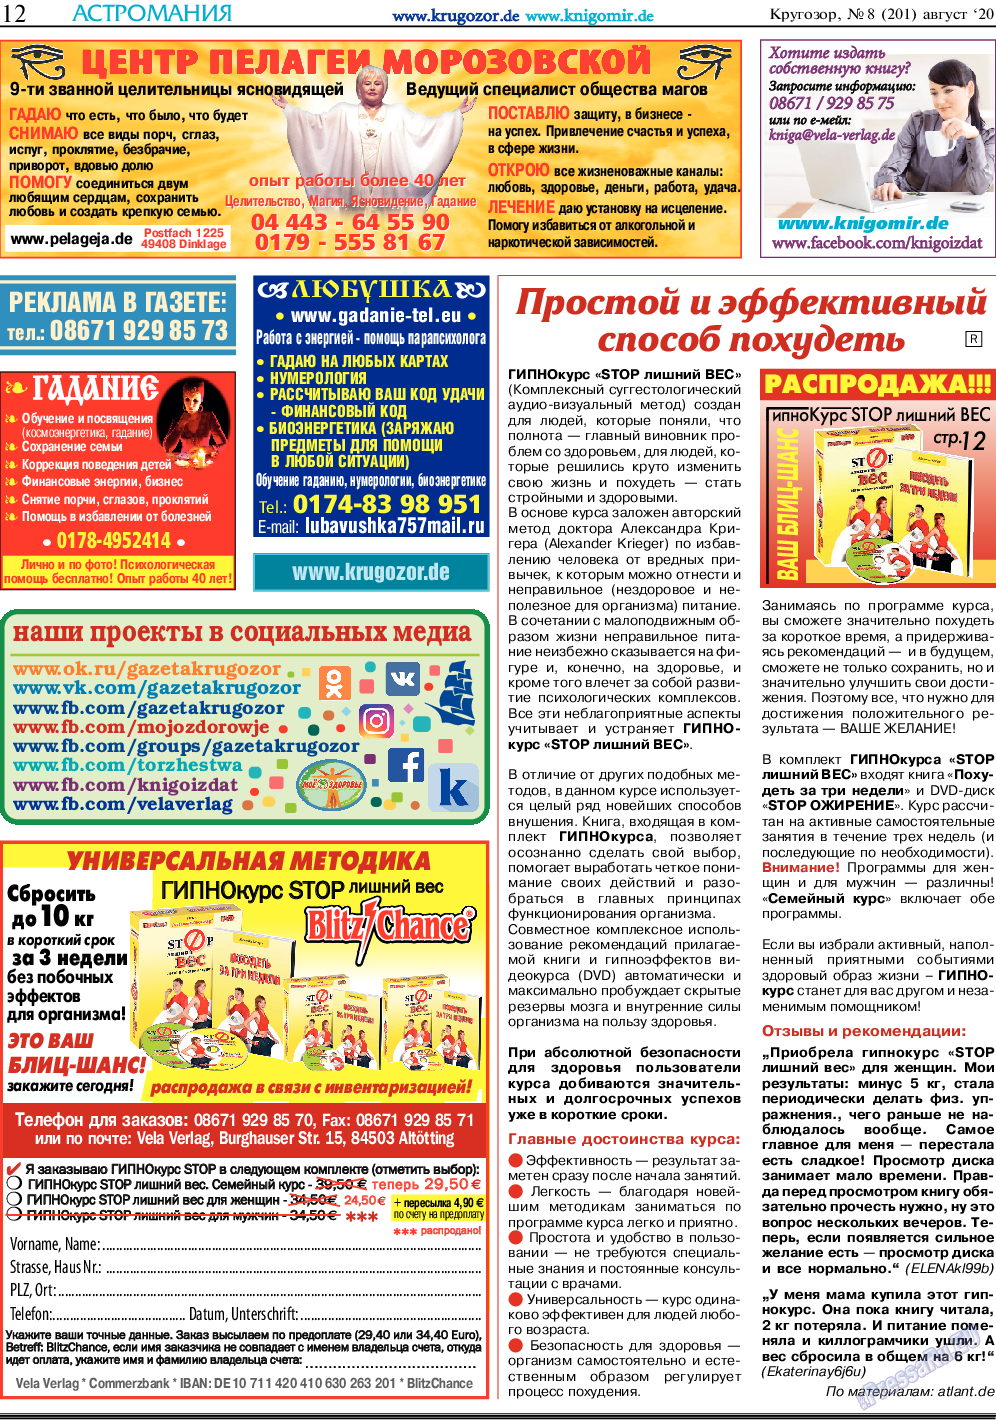 Кругозор, газета. 2020 №8 стр.12